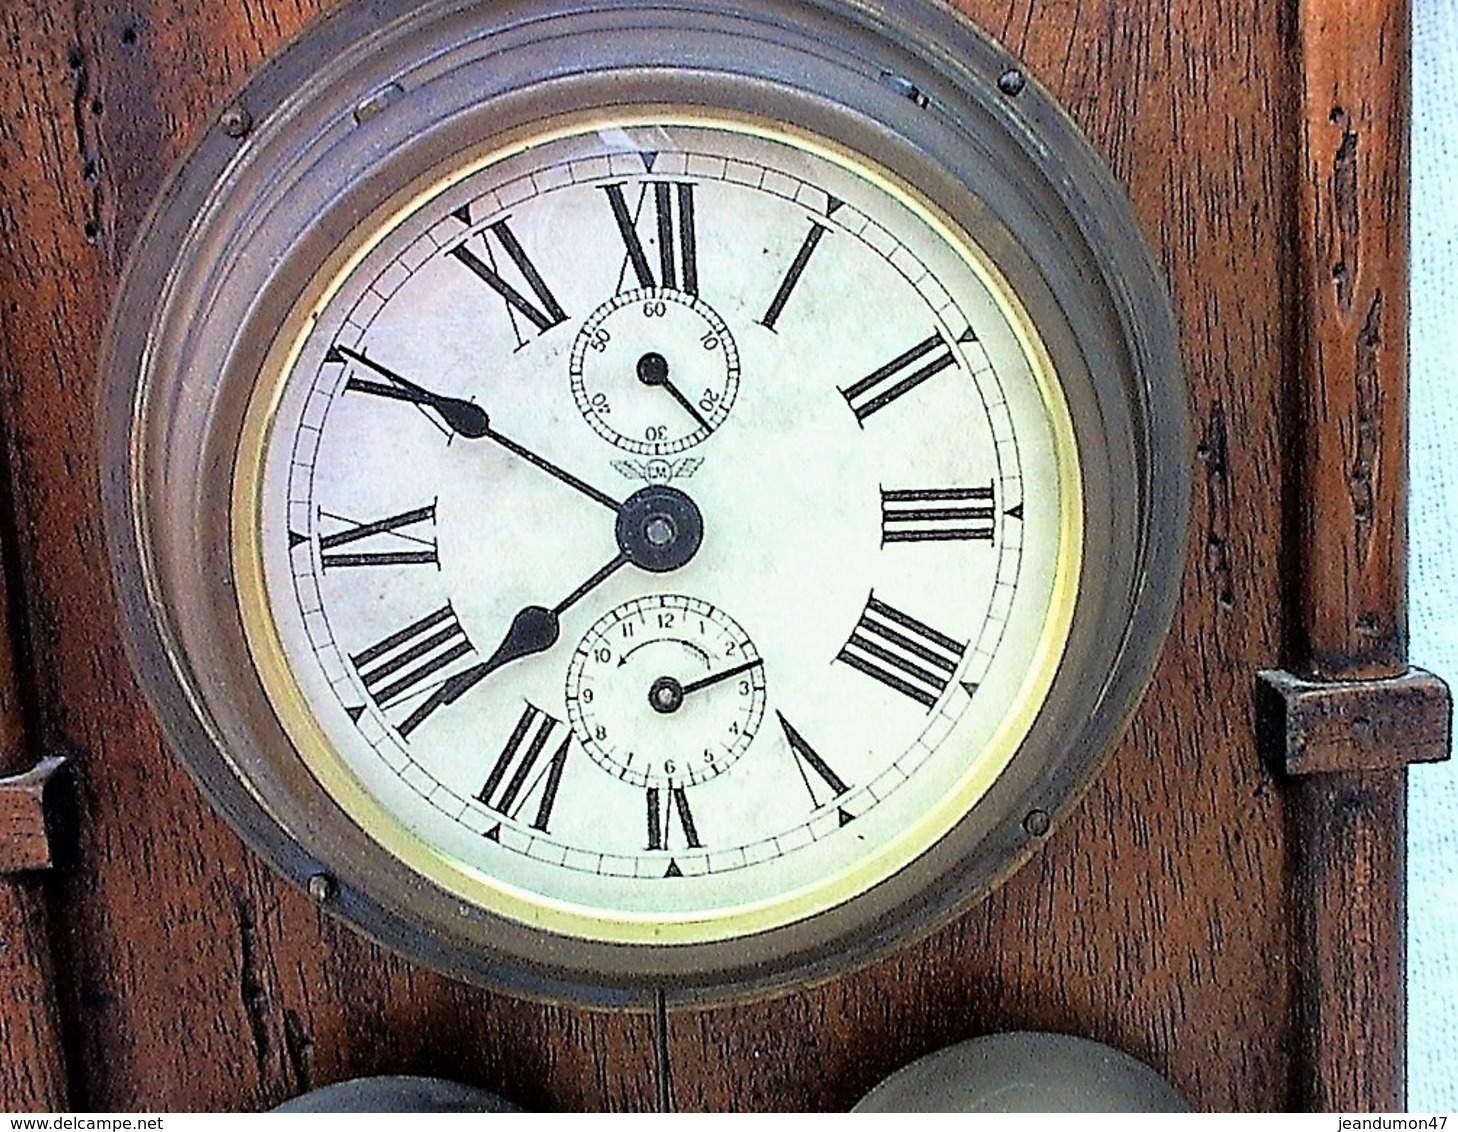 SUPERBE HORLOGE MURALE DE 1827. 40 CENTIMETRES DE HAUT. EN ETAT COMPLET DE FONCTIONNEMENT. - Horloges